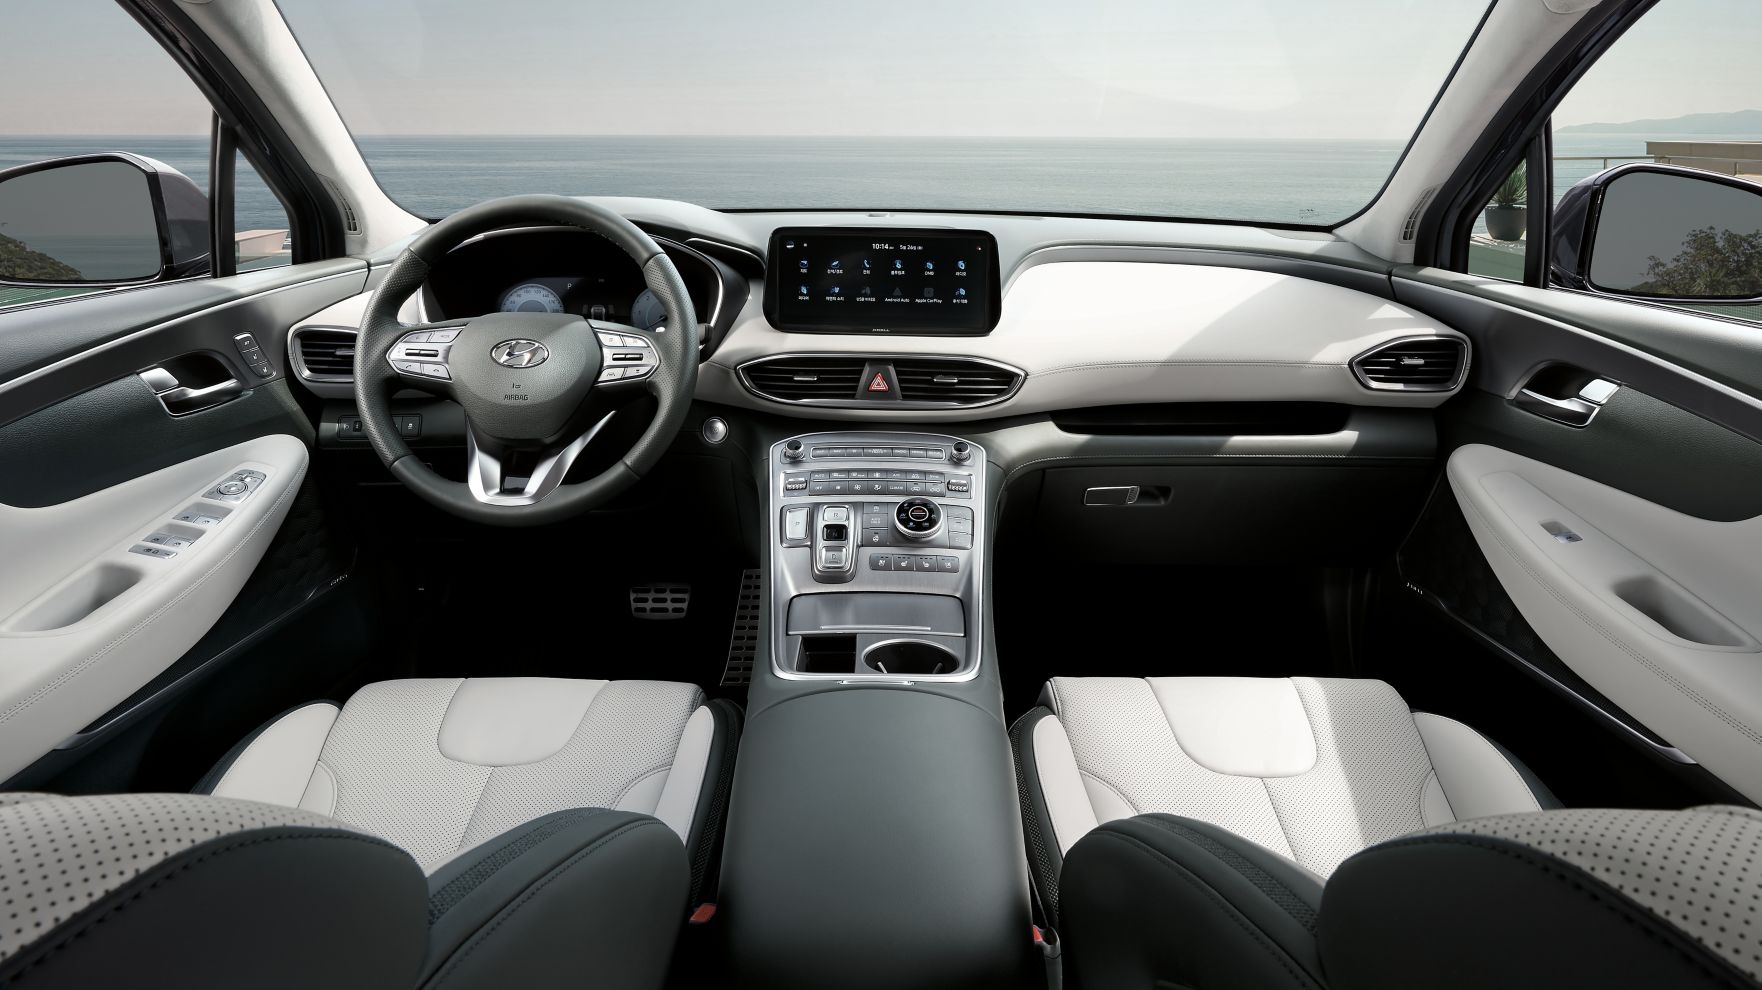 Prémiový design interiéru nového sedmimístného SUV Hyundai Santa Fe Plug-in Hybrid.